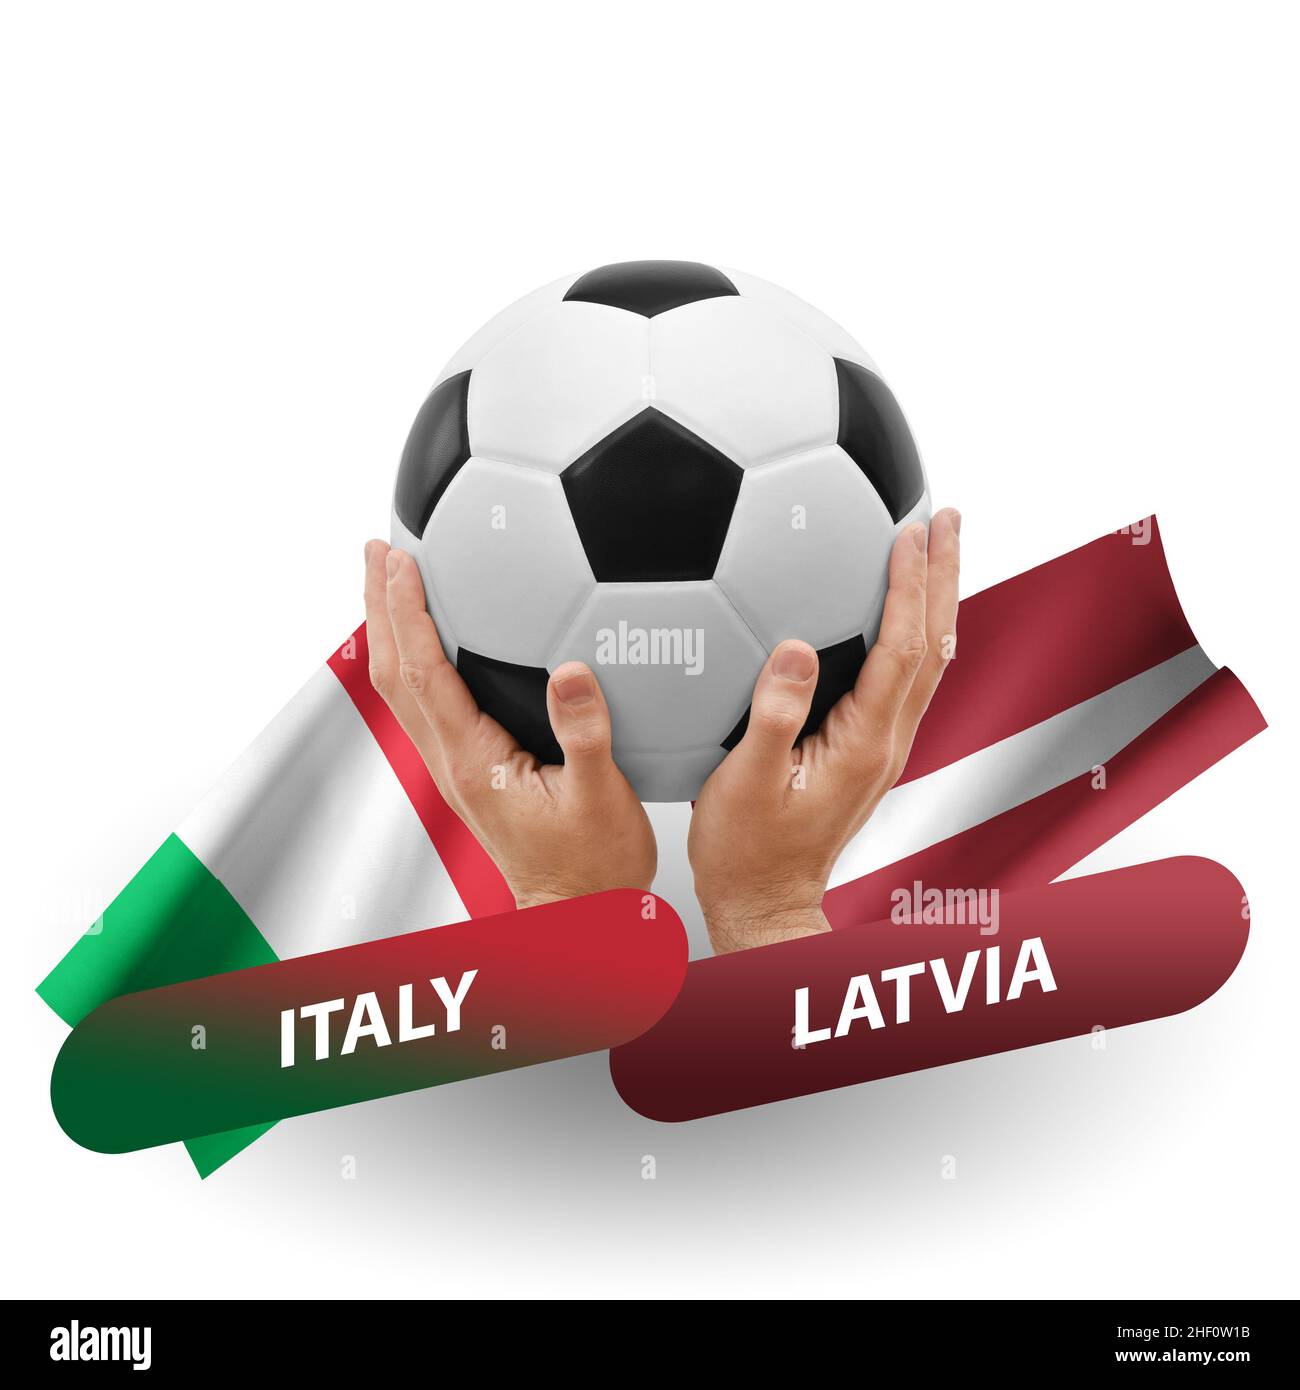 Italia latvia immagini e fotografie stock ad alta risoluzione - Alamy